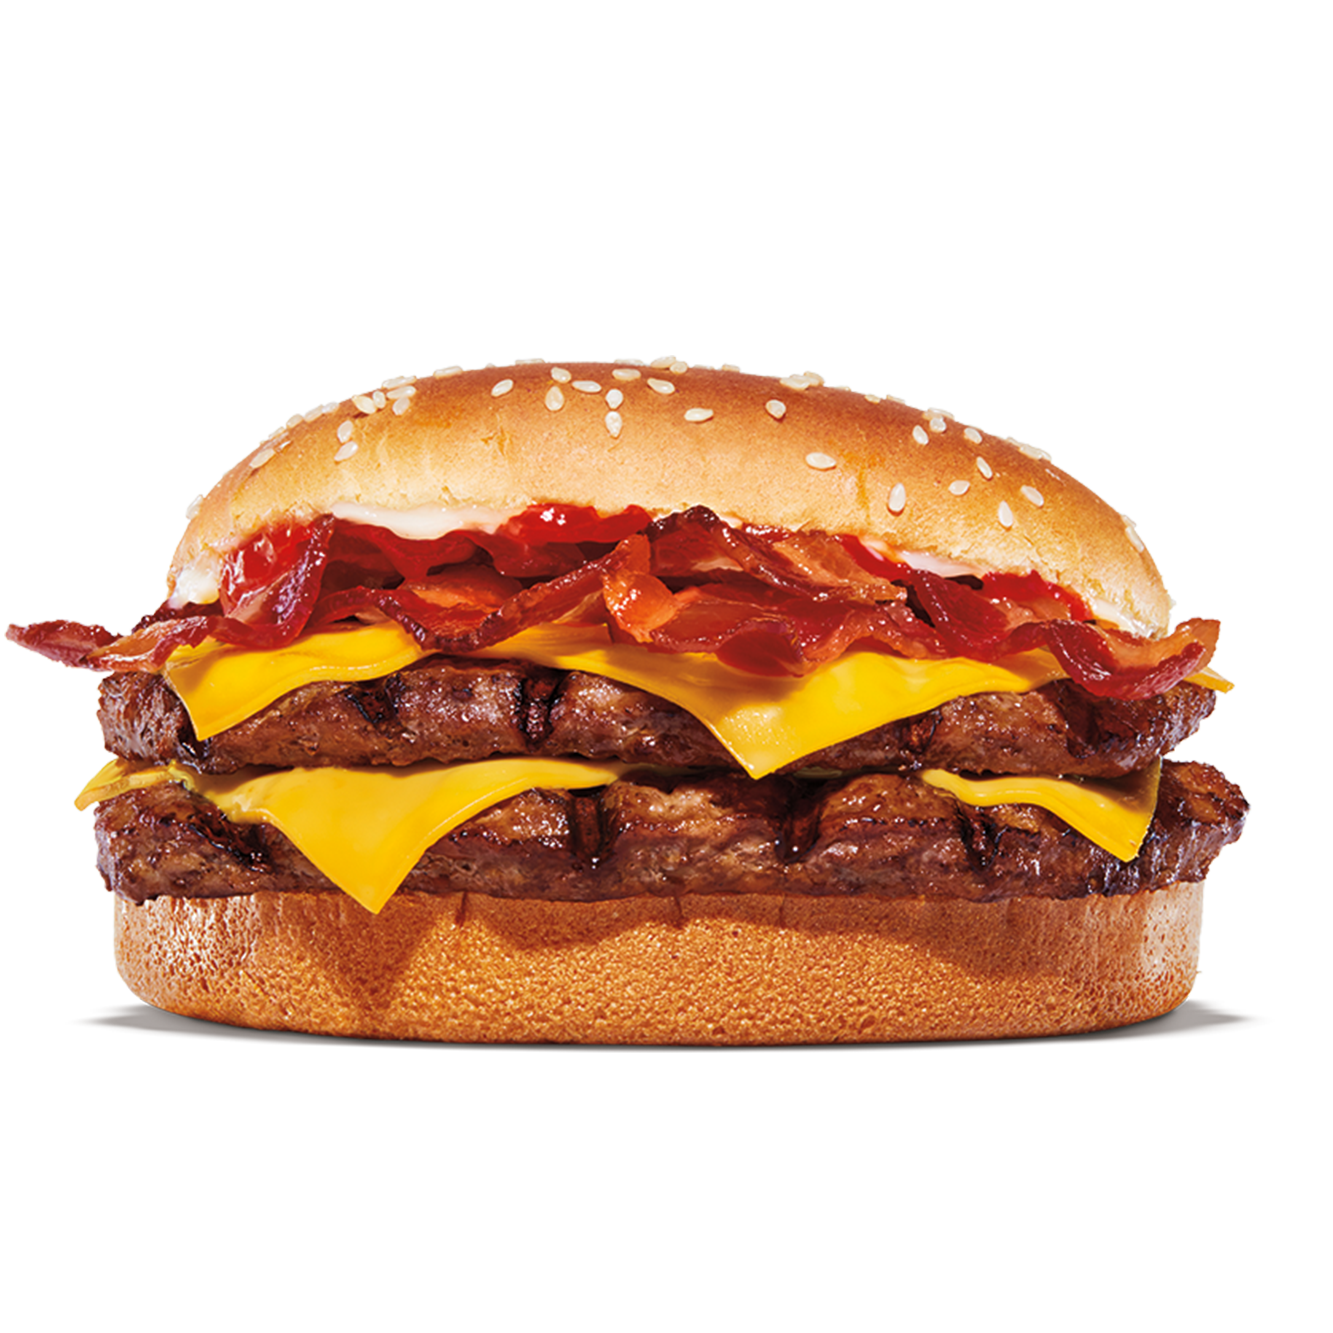 Burger King Florence (843)661-5505